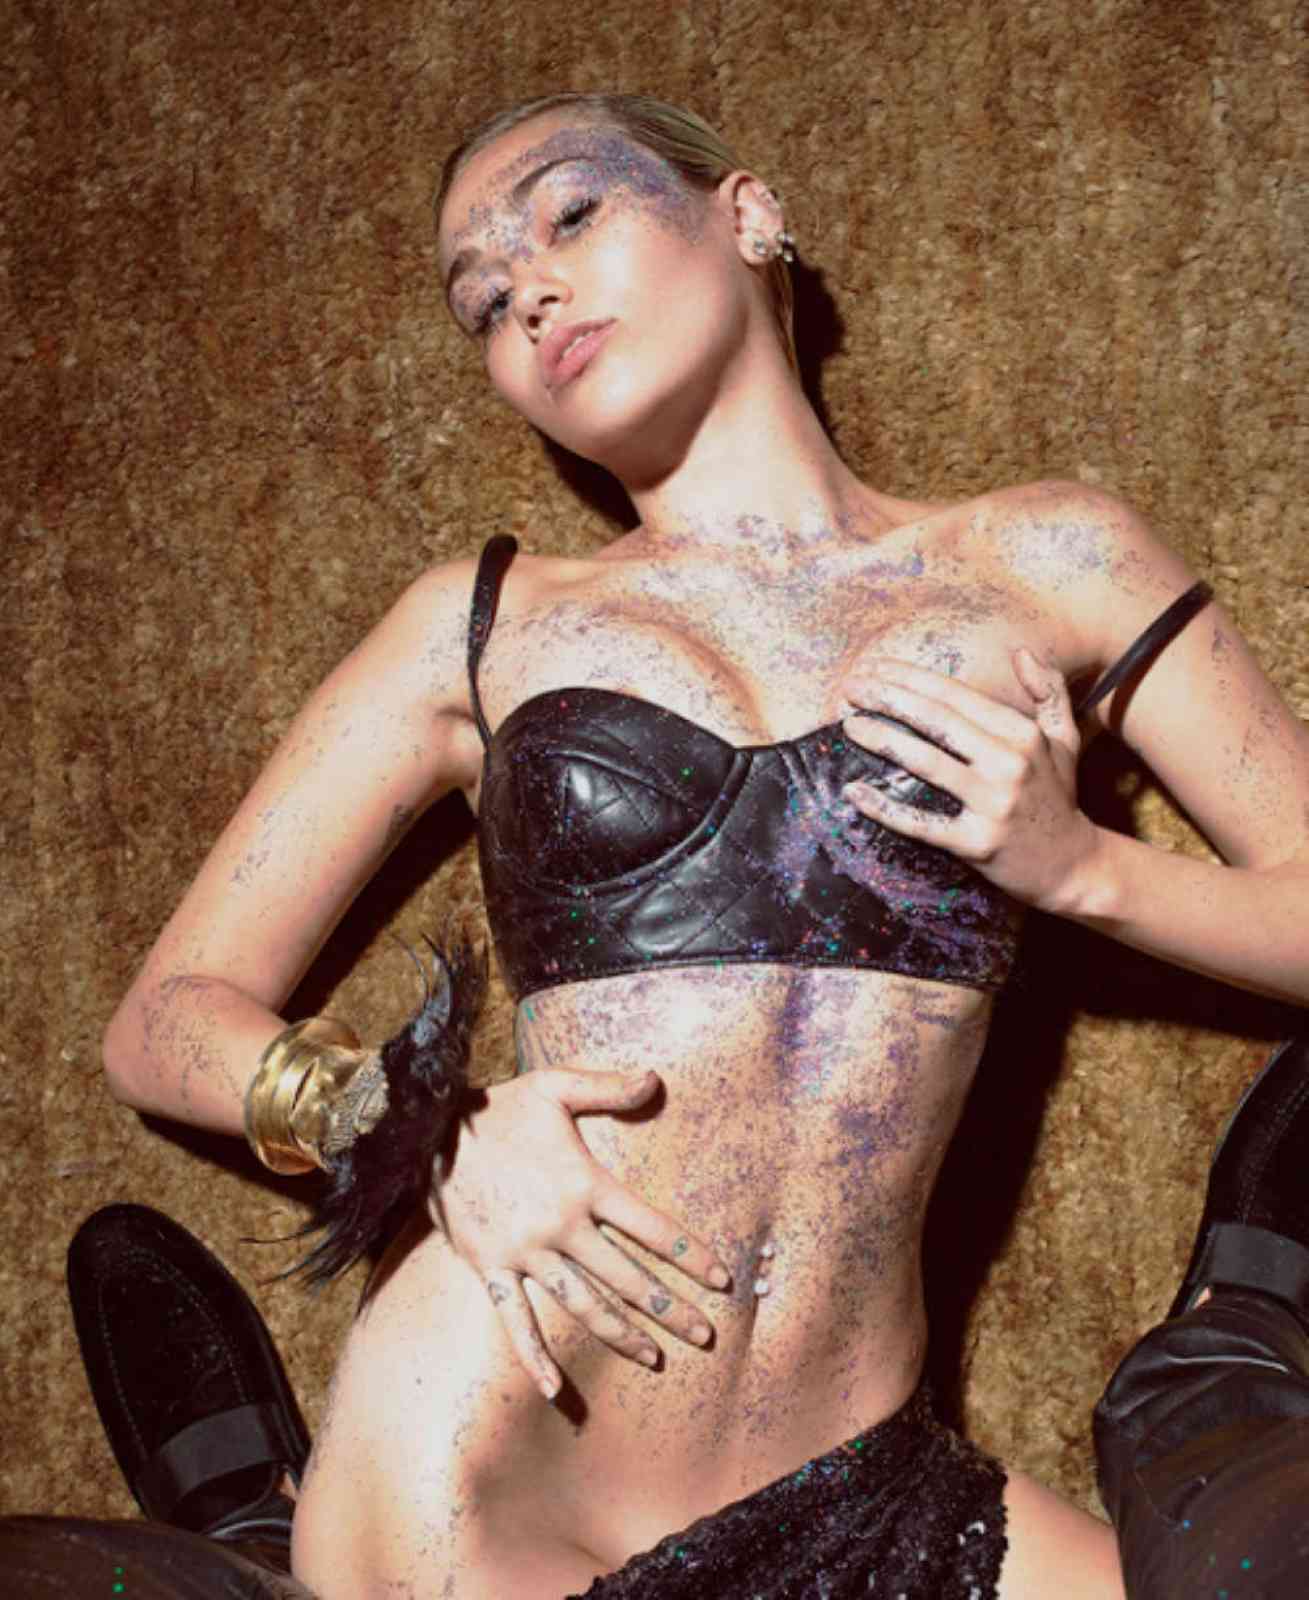 Brown E. reccomend Miley cyrus nude self shots